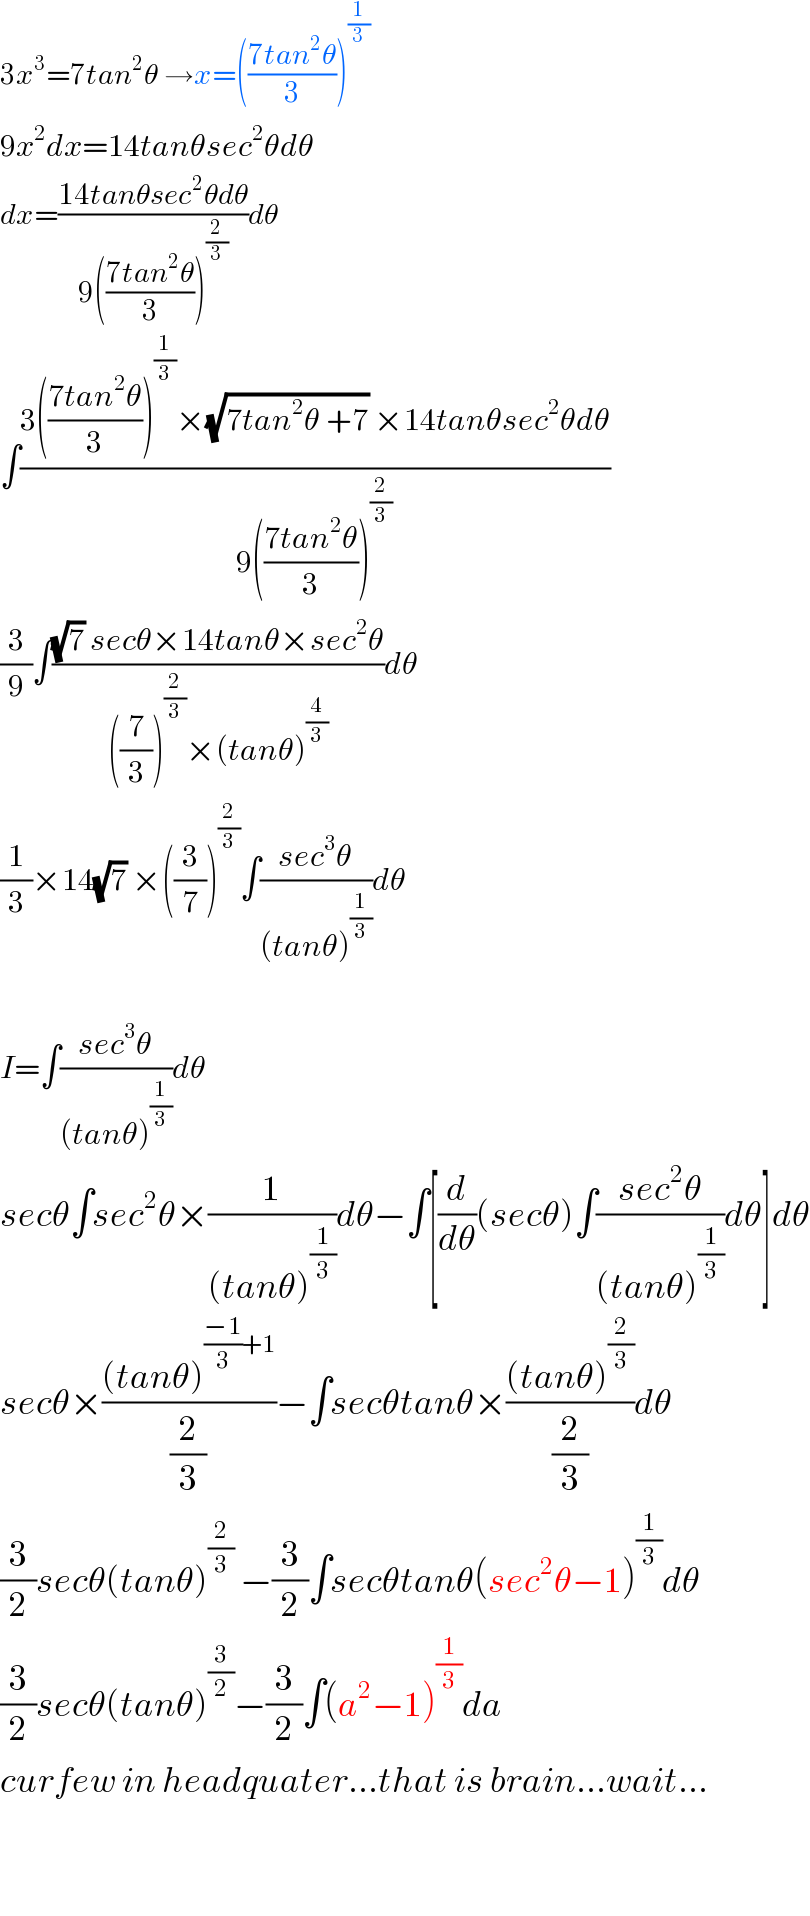 3x^3 =7tan^2 θ →x=(((7tan^2 θ)/3))^(1/3)   9x^2 dx=14tanθsec^2 θdθ  dx=((14tanθsec^2 θdθ)/(9(((7tan^2 θ)/3))^(2/3) ))dθ  ∫((3(((7tan^2 θ)/3))^(1/3) ×(√(7tan^2 θ +7)) ×14tanθsec^2 θdθ)/(9(((7tan^2 θ)/3))^(2/3) ))  (3/9)∫(((√7) secθ×14tanθ×sec^2 θ)/(((7/3))^(2/3) ×(tanθ)^(4/3) ))dθ  (1/3)×14(√7) ×((3/7))^(2/3) ∫((sec^3 θ)/((tanθ)^(1/3) ))dθ    I=∫((sec^3 θ)/((tanθ)^(1/3) ))dθ  secθ∫sec^2 θ×(1/((tanθ)^(1/3) ))dθ−∫[(d/dθ)(secθ)∫((sec^2 θ)/((tanθ)^(1/3) ))dθ]dθ  secθ×(((tanθ)^(((−1)/3)+1) )/(2/3))−∫secθtanθ×(((tanθ)^(2/3) )/(2/3))dθ  (3/2)secθ(tanθ)^(2/3)  −(3/2)∫secθtanθ(sec^2 θ−1)^(1/3) dθ  (3/2)secθ(tanθ)^(3/2) −(3/2)∫(a^2 −1)^(1/3) da  curfew in headquater...that is brain...wait...      